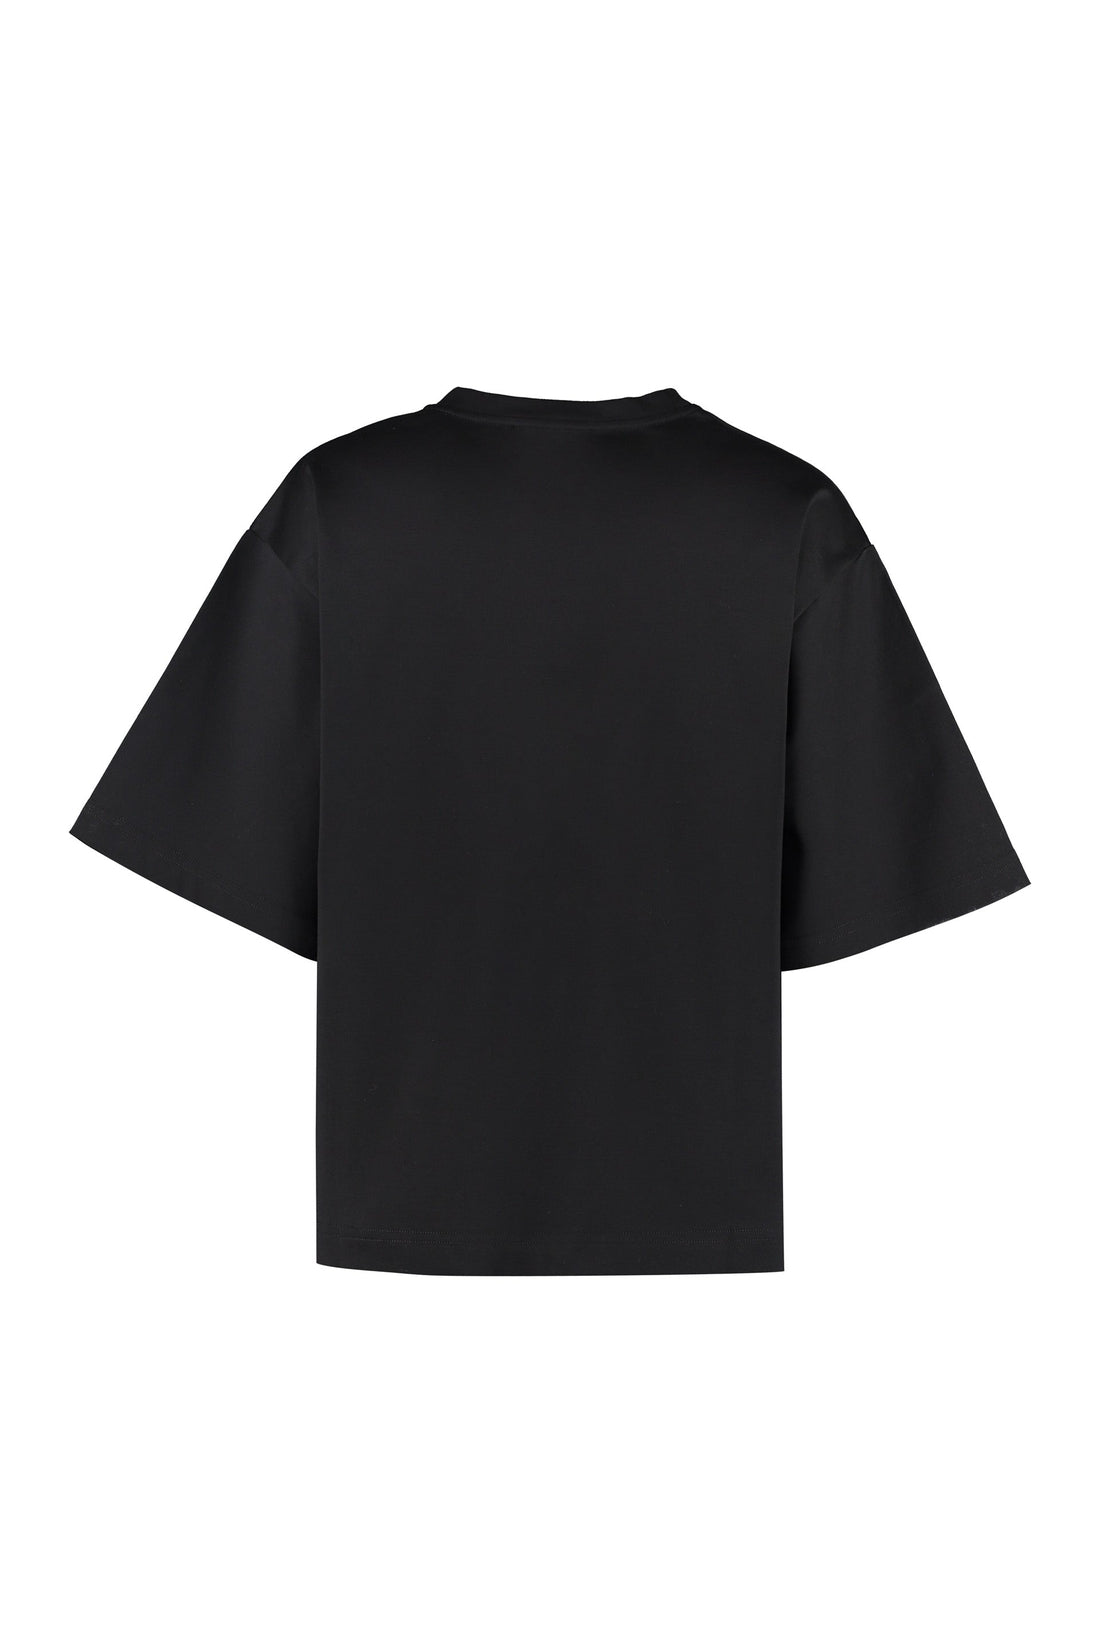 Dolce & Gabbana-OUTLET-SALE-Cotton crew-neck T-shirt-ARCHIVIST